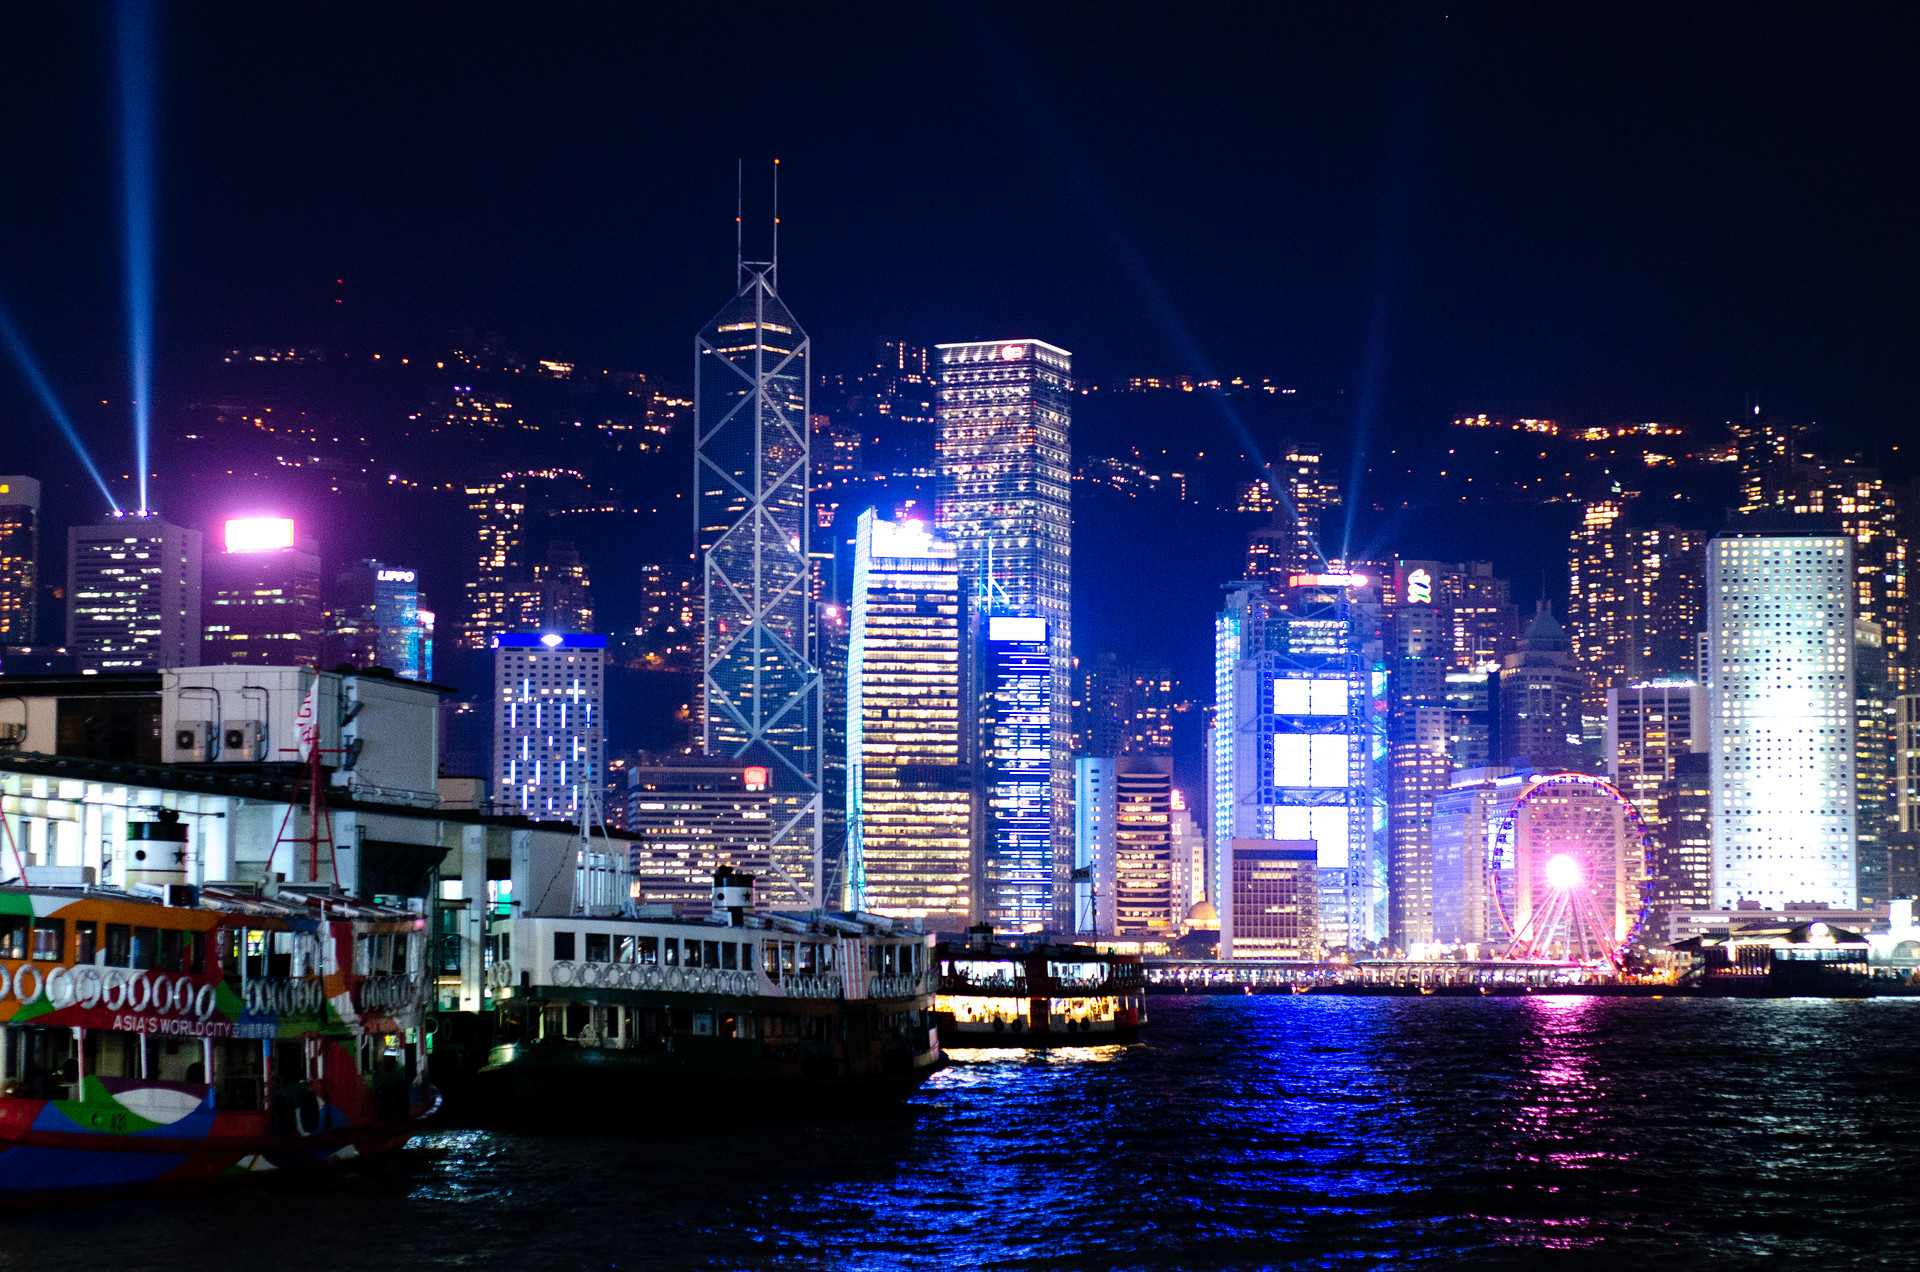 欧亚国际香港金融盛事周将发动 多项国际顶级峰会等将举行